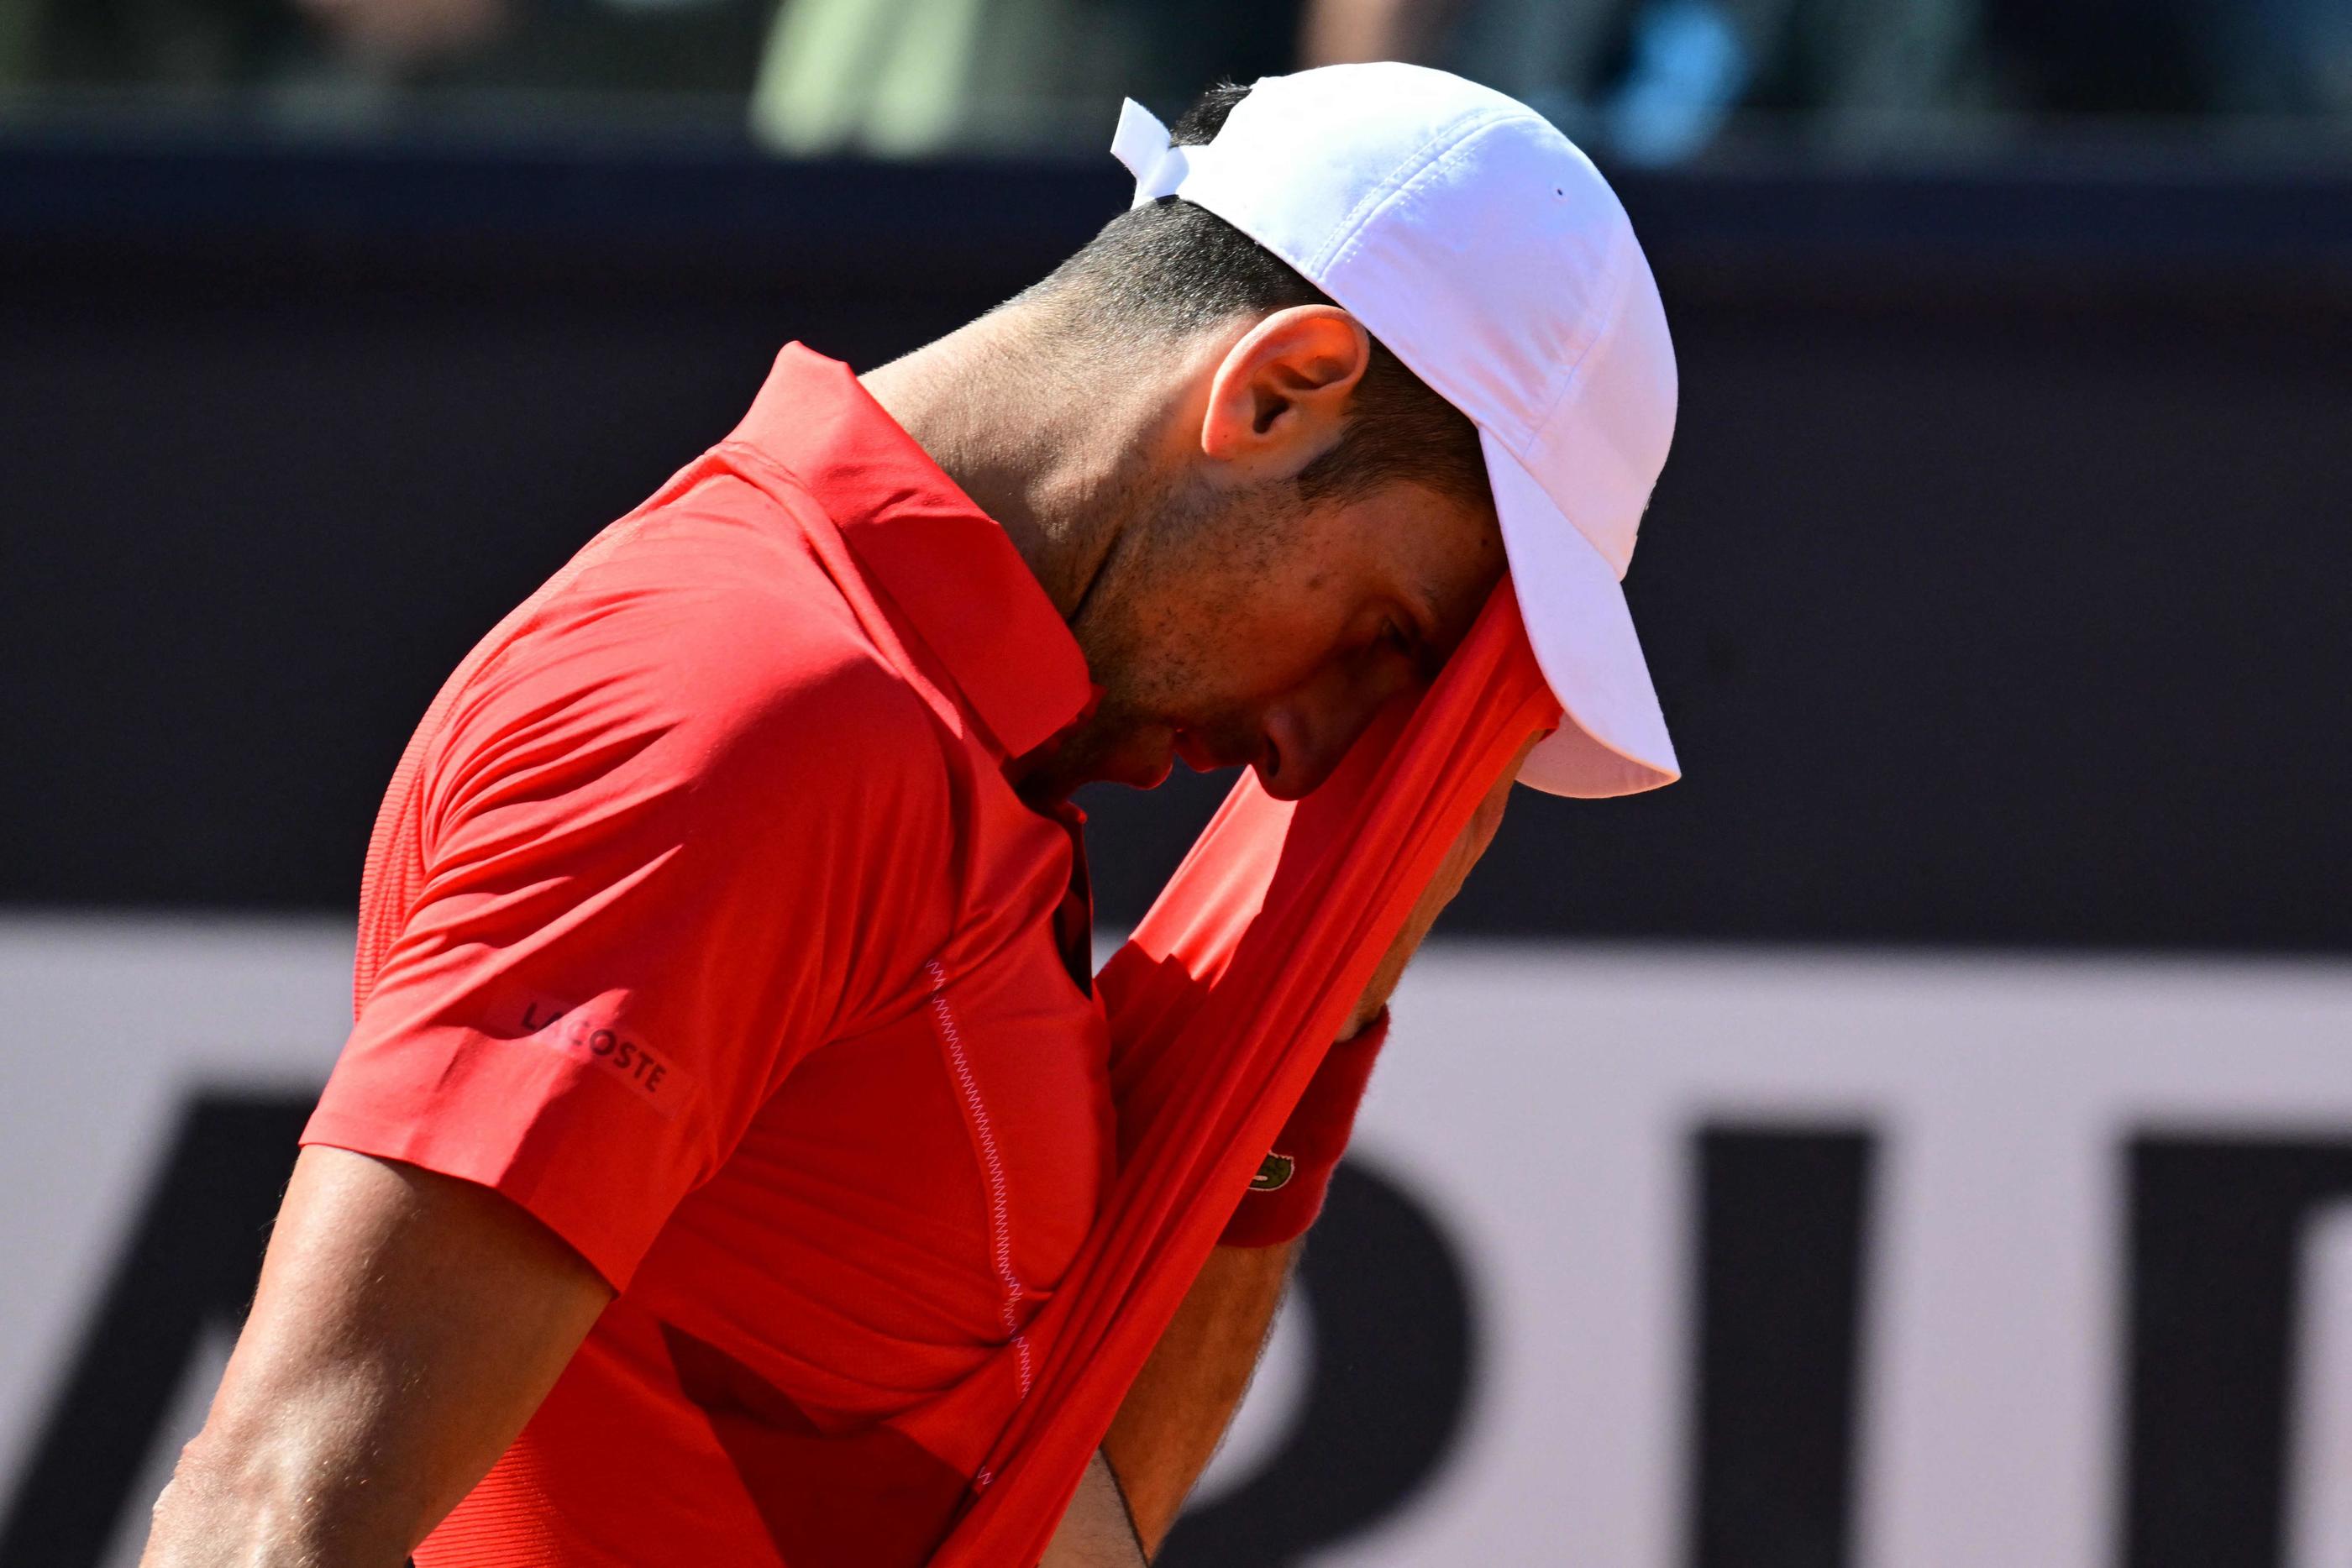 Le numéro 1 mondial Novak Djokovic a été éliminé dimanche dès le 3e tour du Masters 1000 de Rome, dominé par le Chilien Alejandro Tabilo, 32e au classement ATP, 6-2, 6-3. AFP/Tiziana Fabi